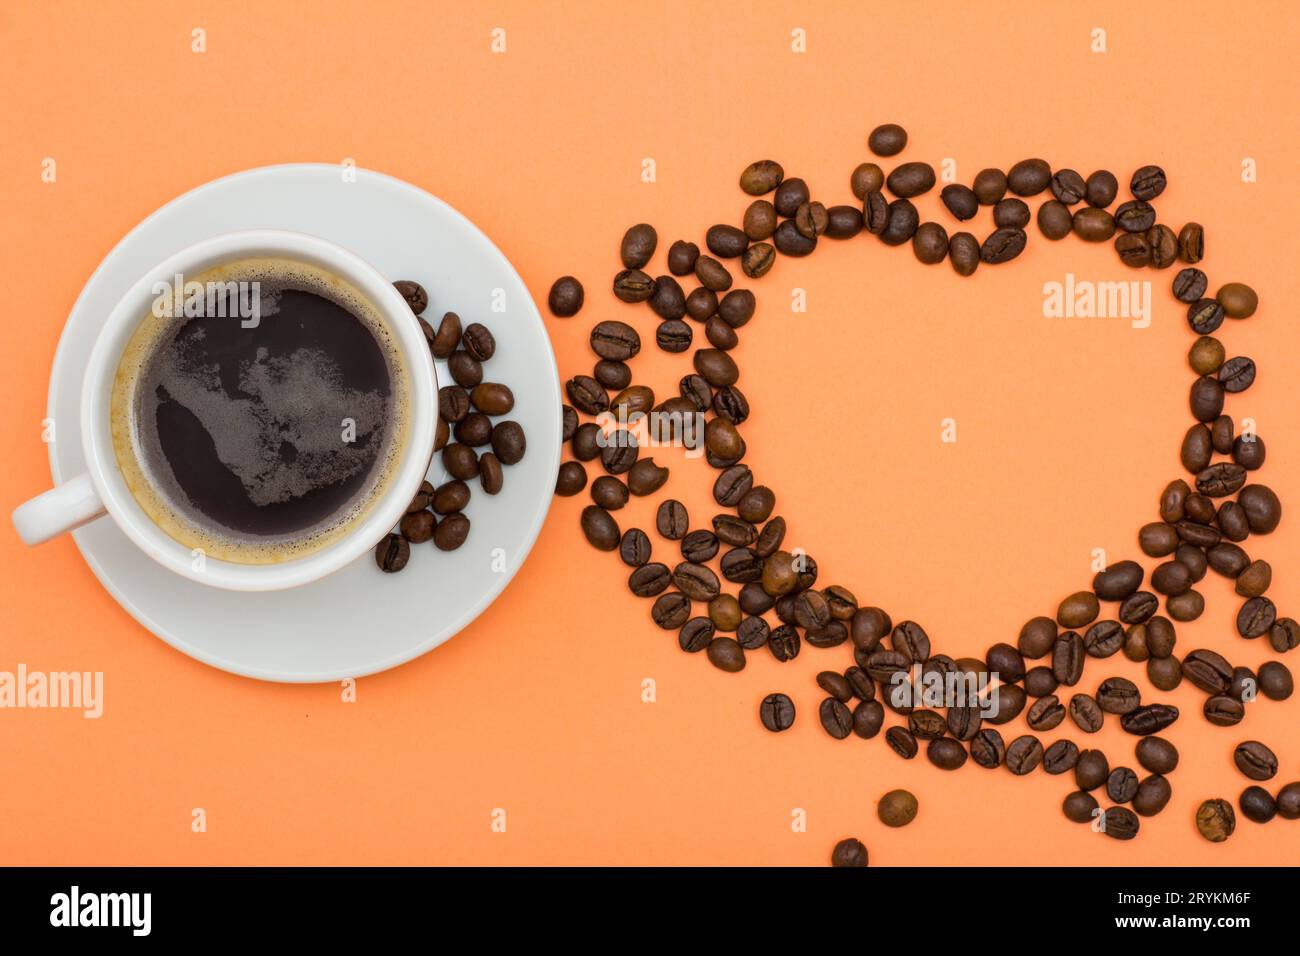 Eine Tasse Kaffee auf einer Untertasse mit Kaffeebohnen, die in Form eines Herzens gefaltet sind Stockfoto